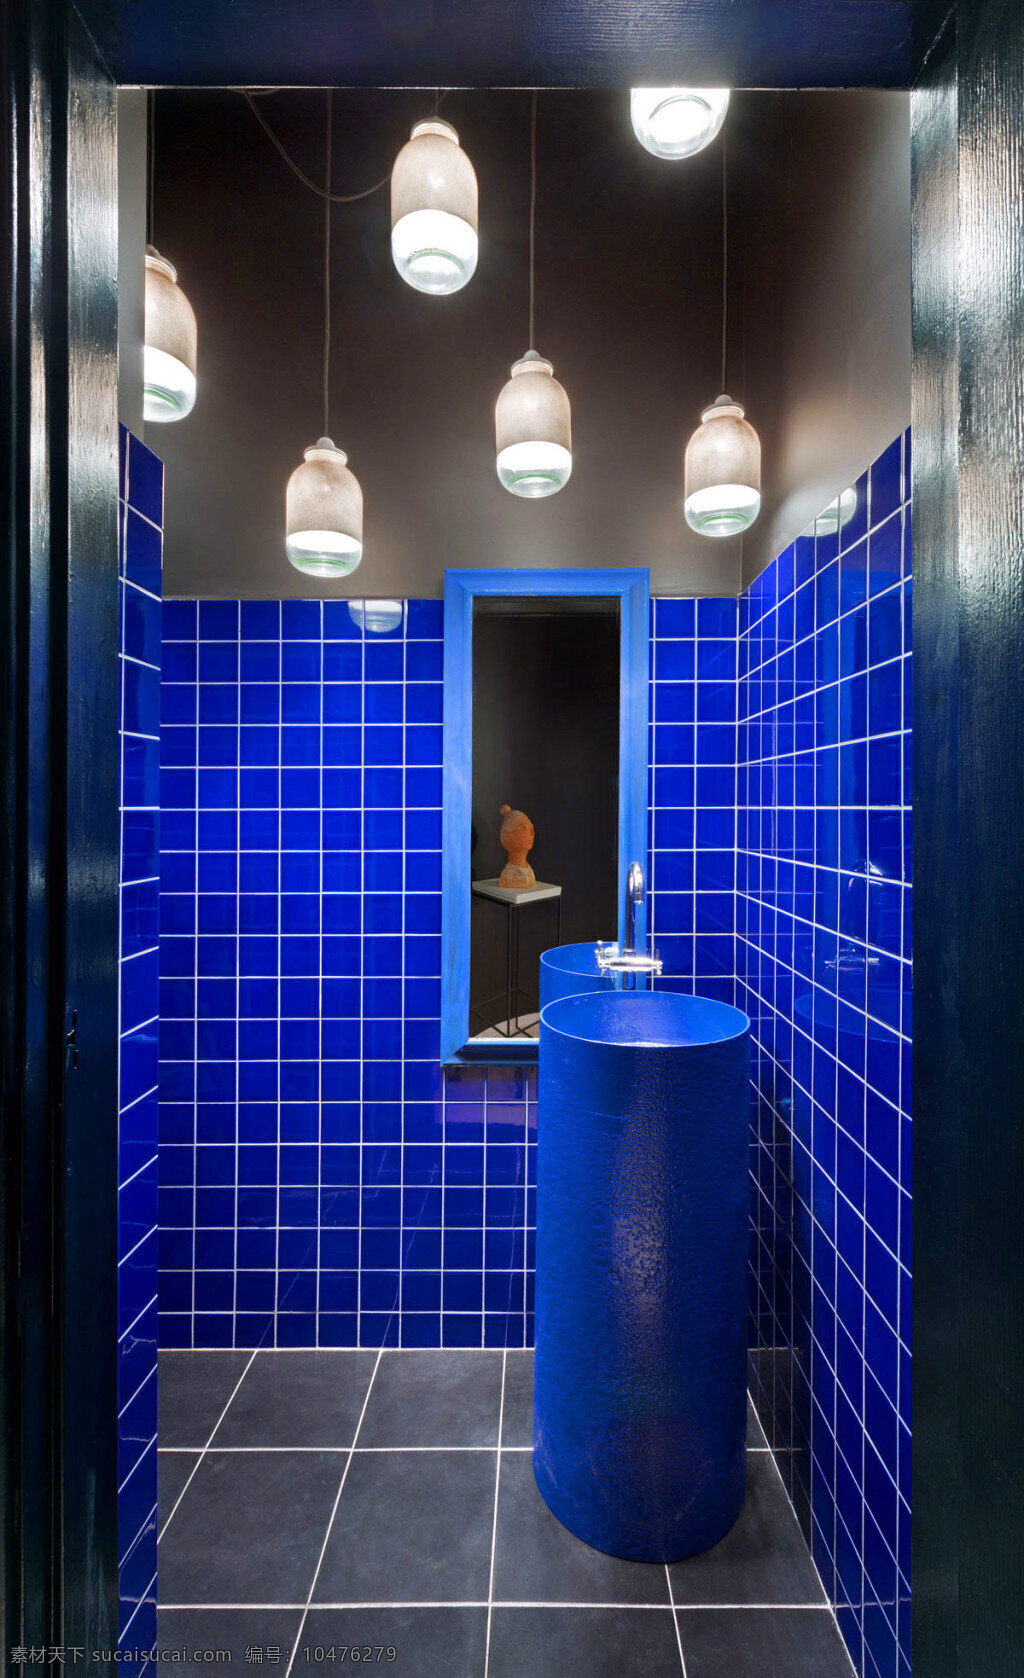 简约 时尚 卫生间 吊灯 装修 效果图 蓝色墙砖 灰色 方块 地板砖 洗脸盆 镜子 门框